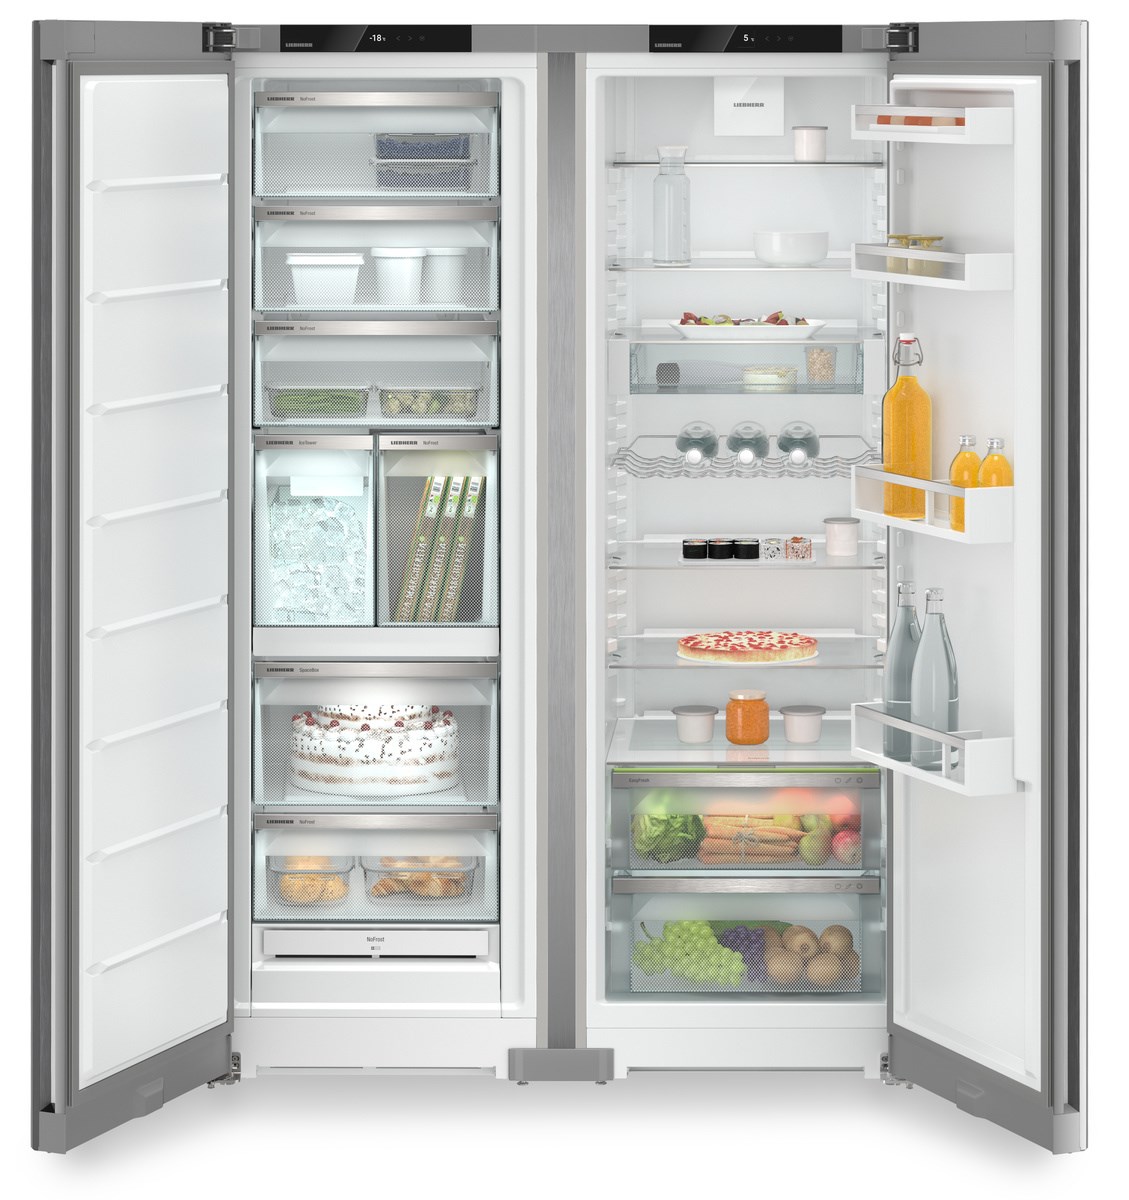 Una puerta de refrigerador vertical compacto para descongelar el